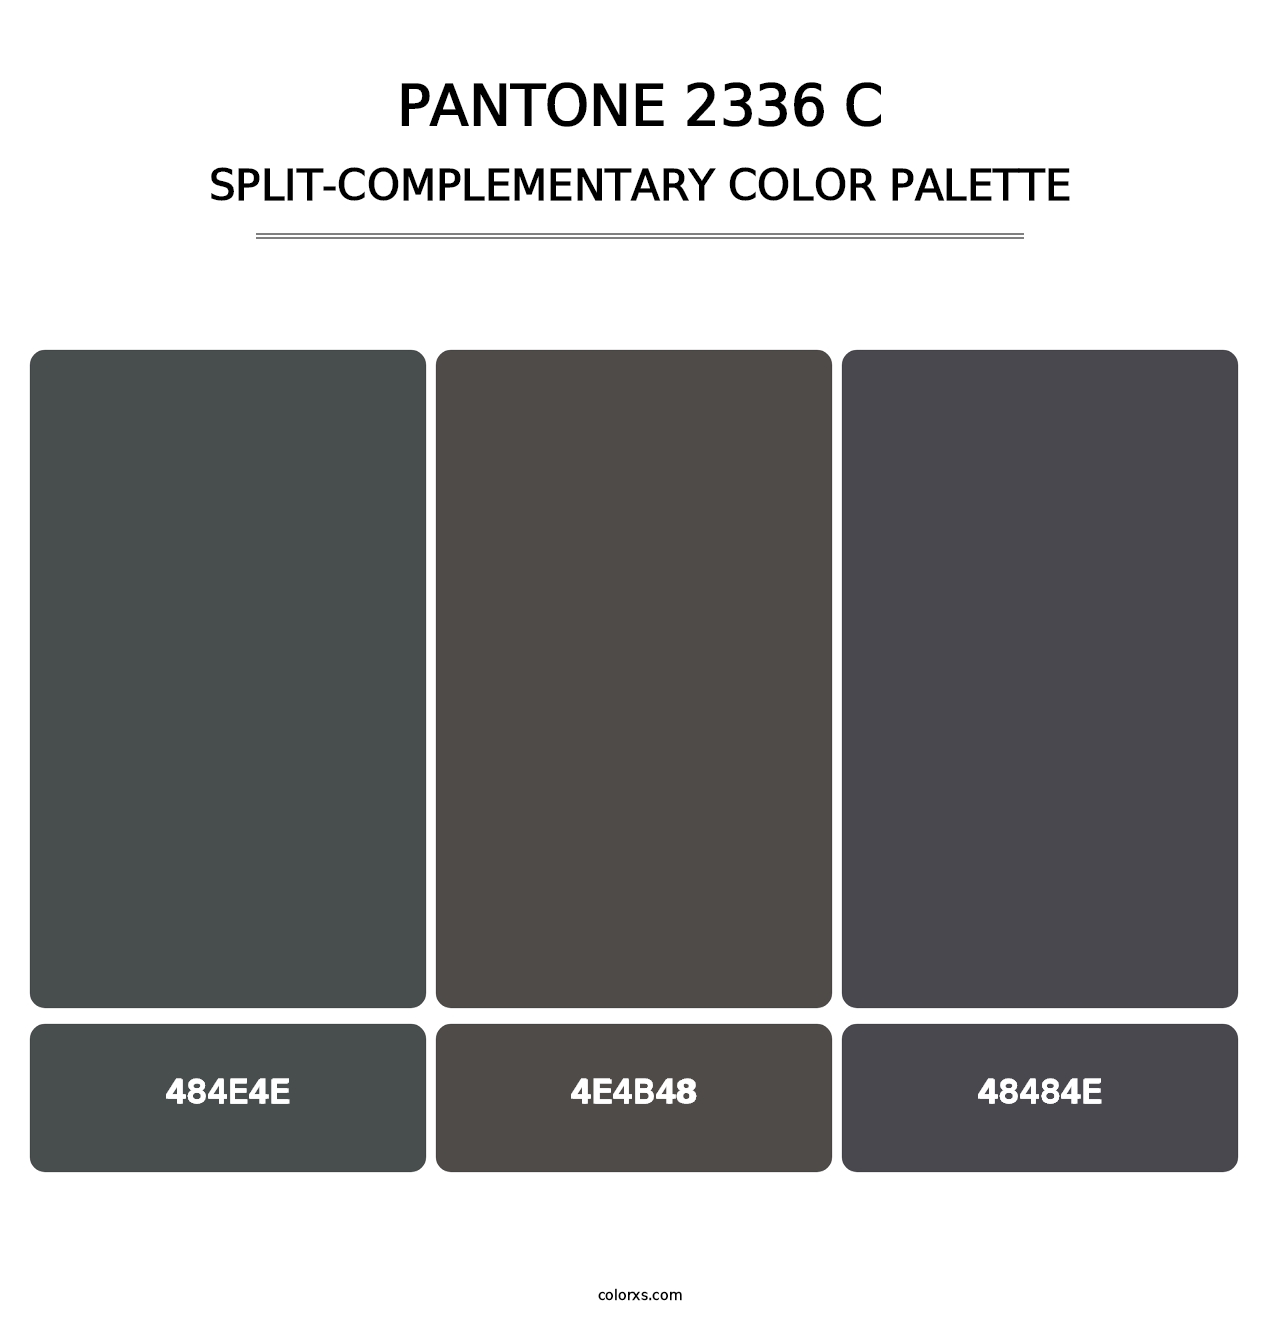 PANTONE 2336 C - Split-Complementary Color Palette